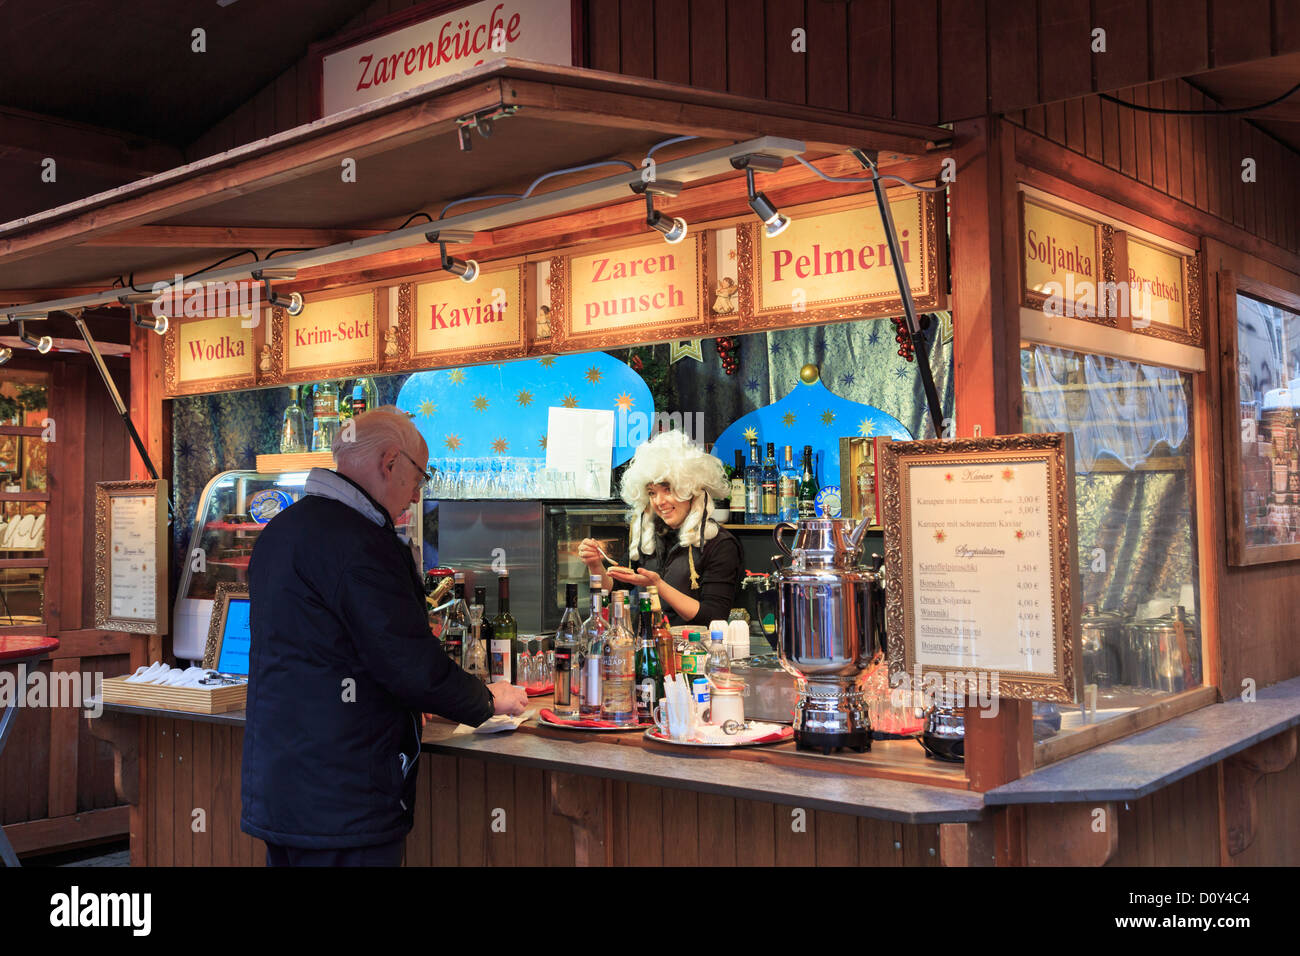 Man kauft einen Snack aus einer lächelnden Frau, die das Tragen einer Perücke auf einen traditionellen Weihnachtsmarkt stall verkaufen Speisen und Getränke Alexanderplatz, Berlin, Deutschland Stockfoto